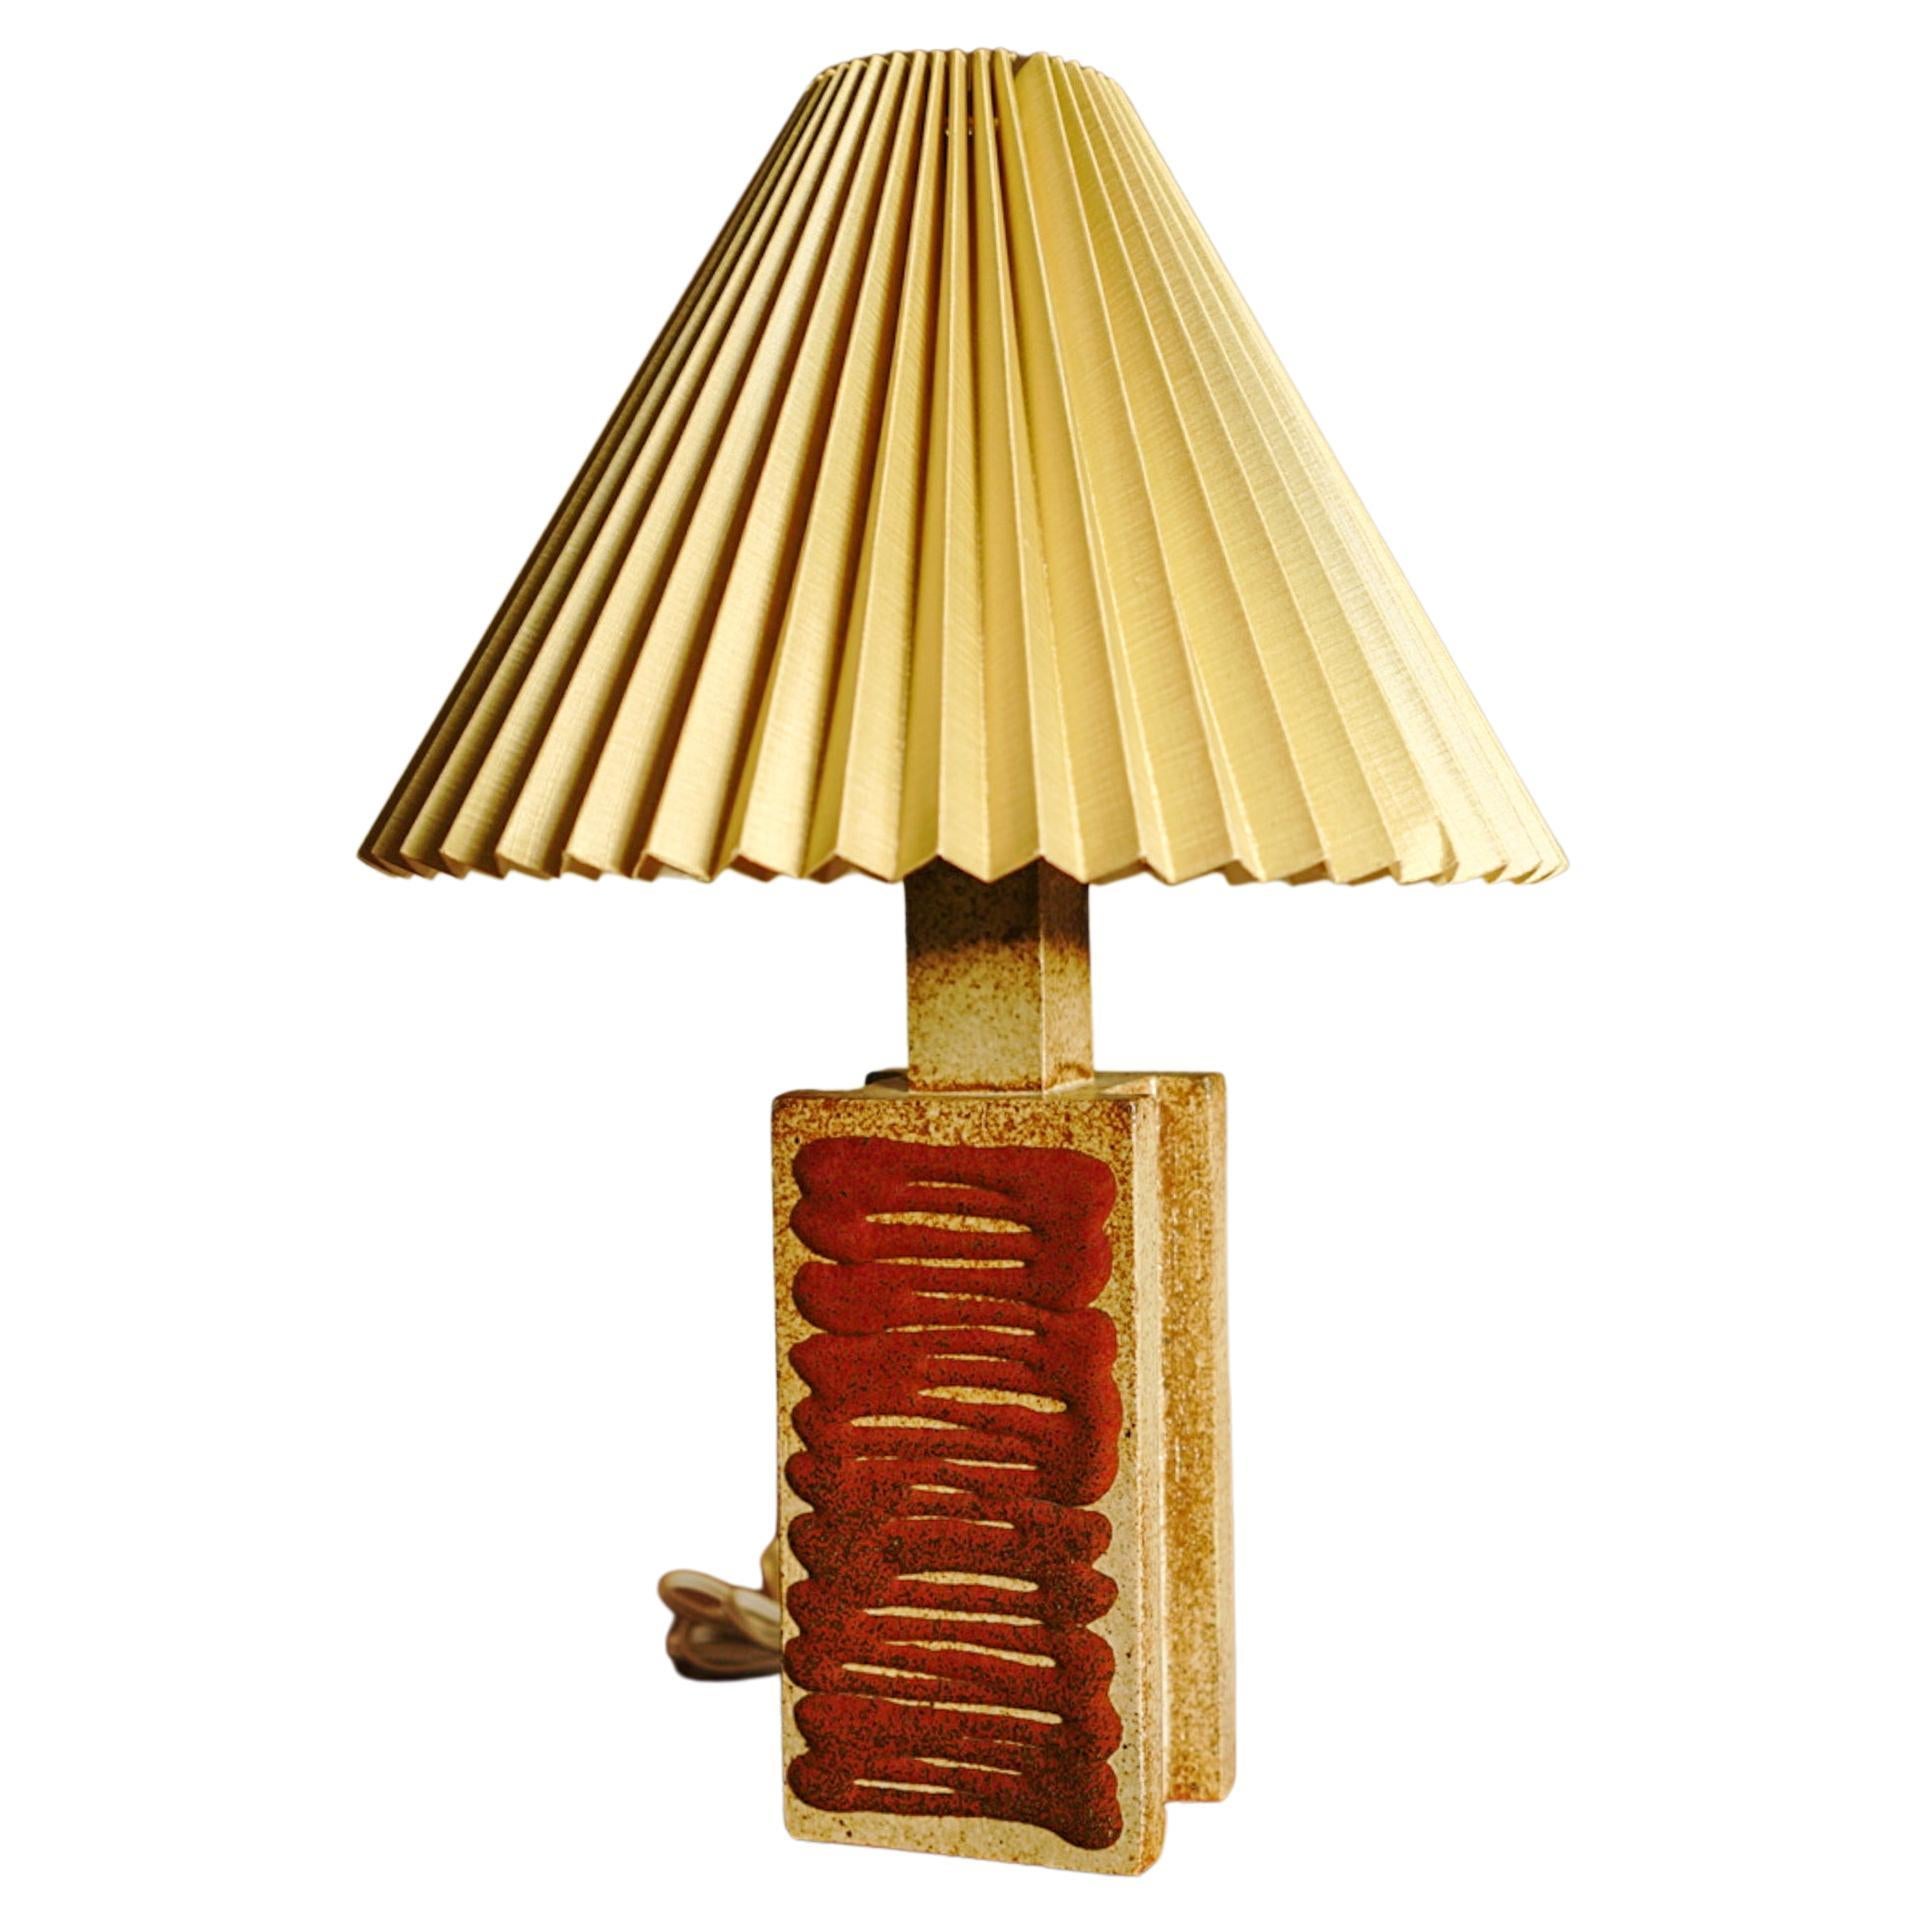 Lampe de table haute du milieu du siècle dernier du danois Palshus.
La lampe a été conçue par Per Linnemann-Schmidt et produite, vers les années 1960.

Entièrement marqué sur le fond. Longueur avec douille.

Ampoule : Pour raccord à vis Edison de